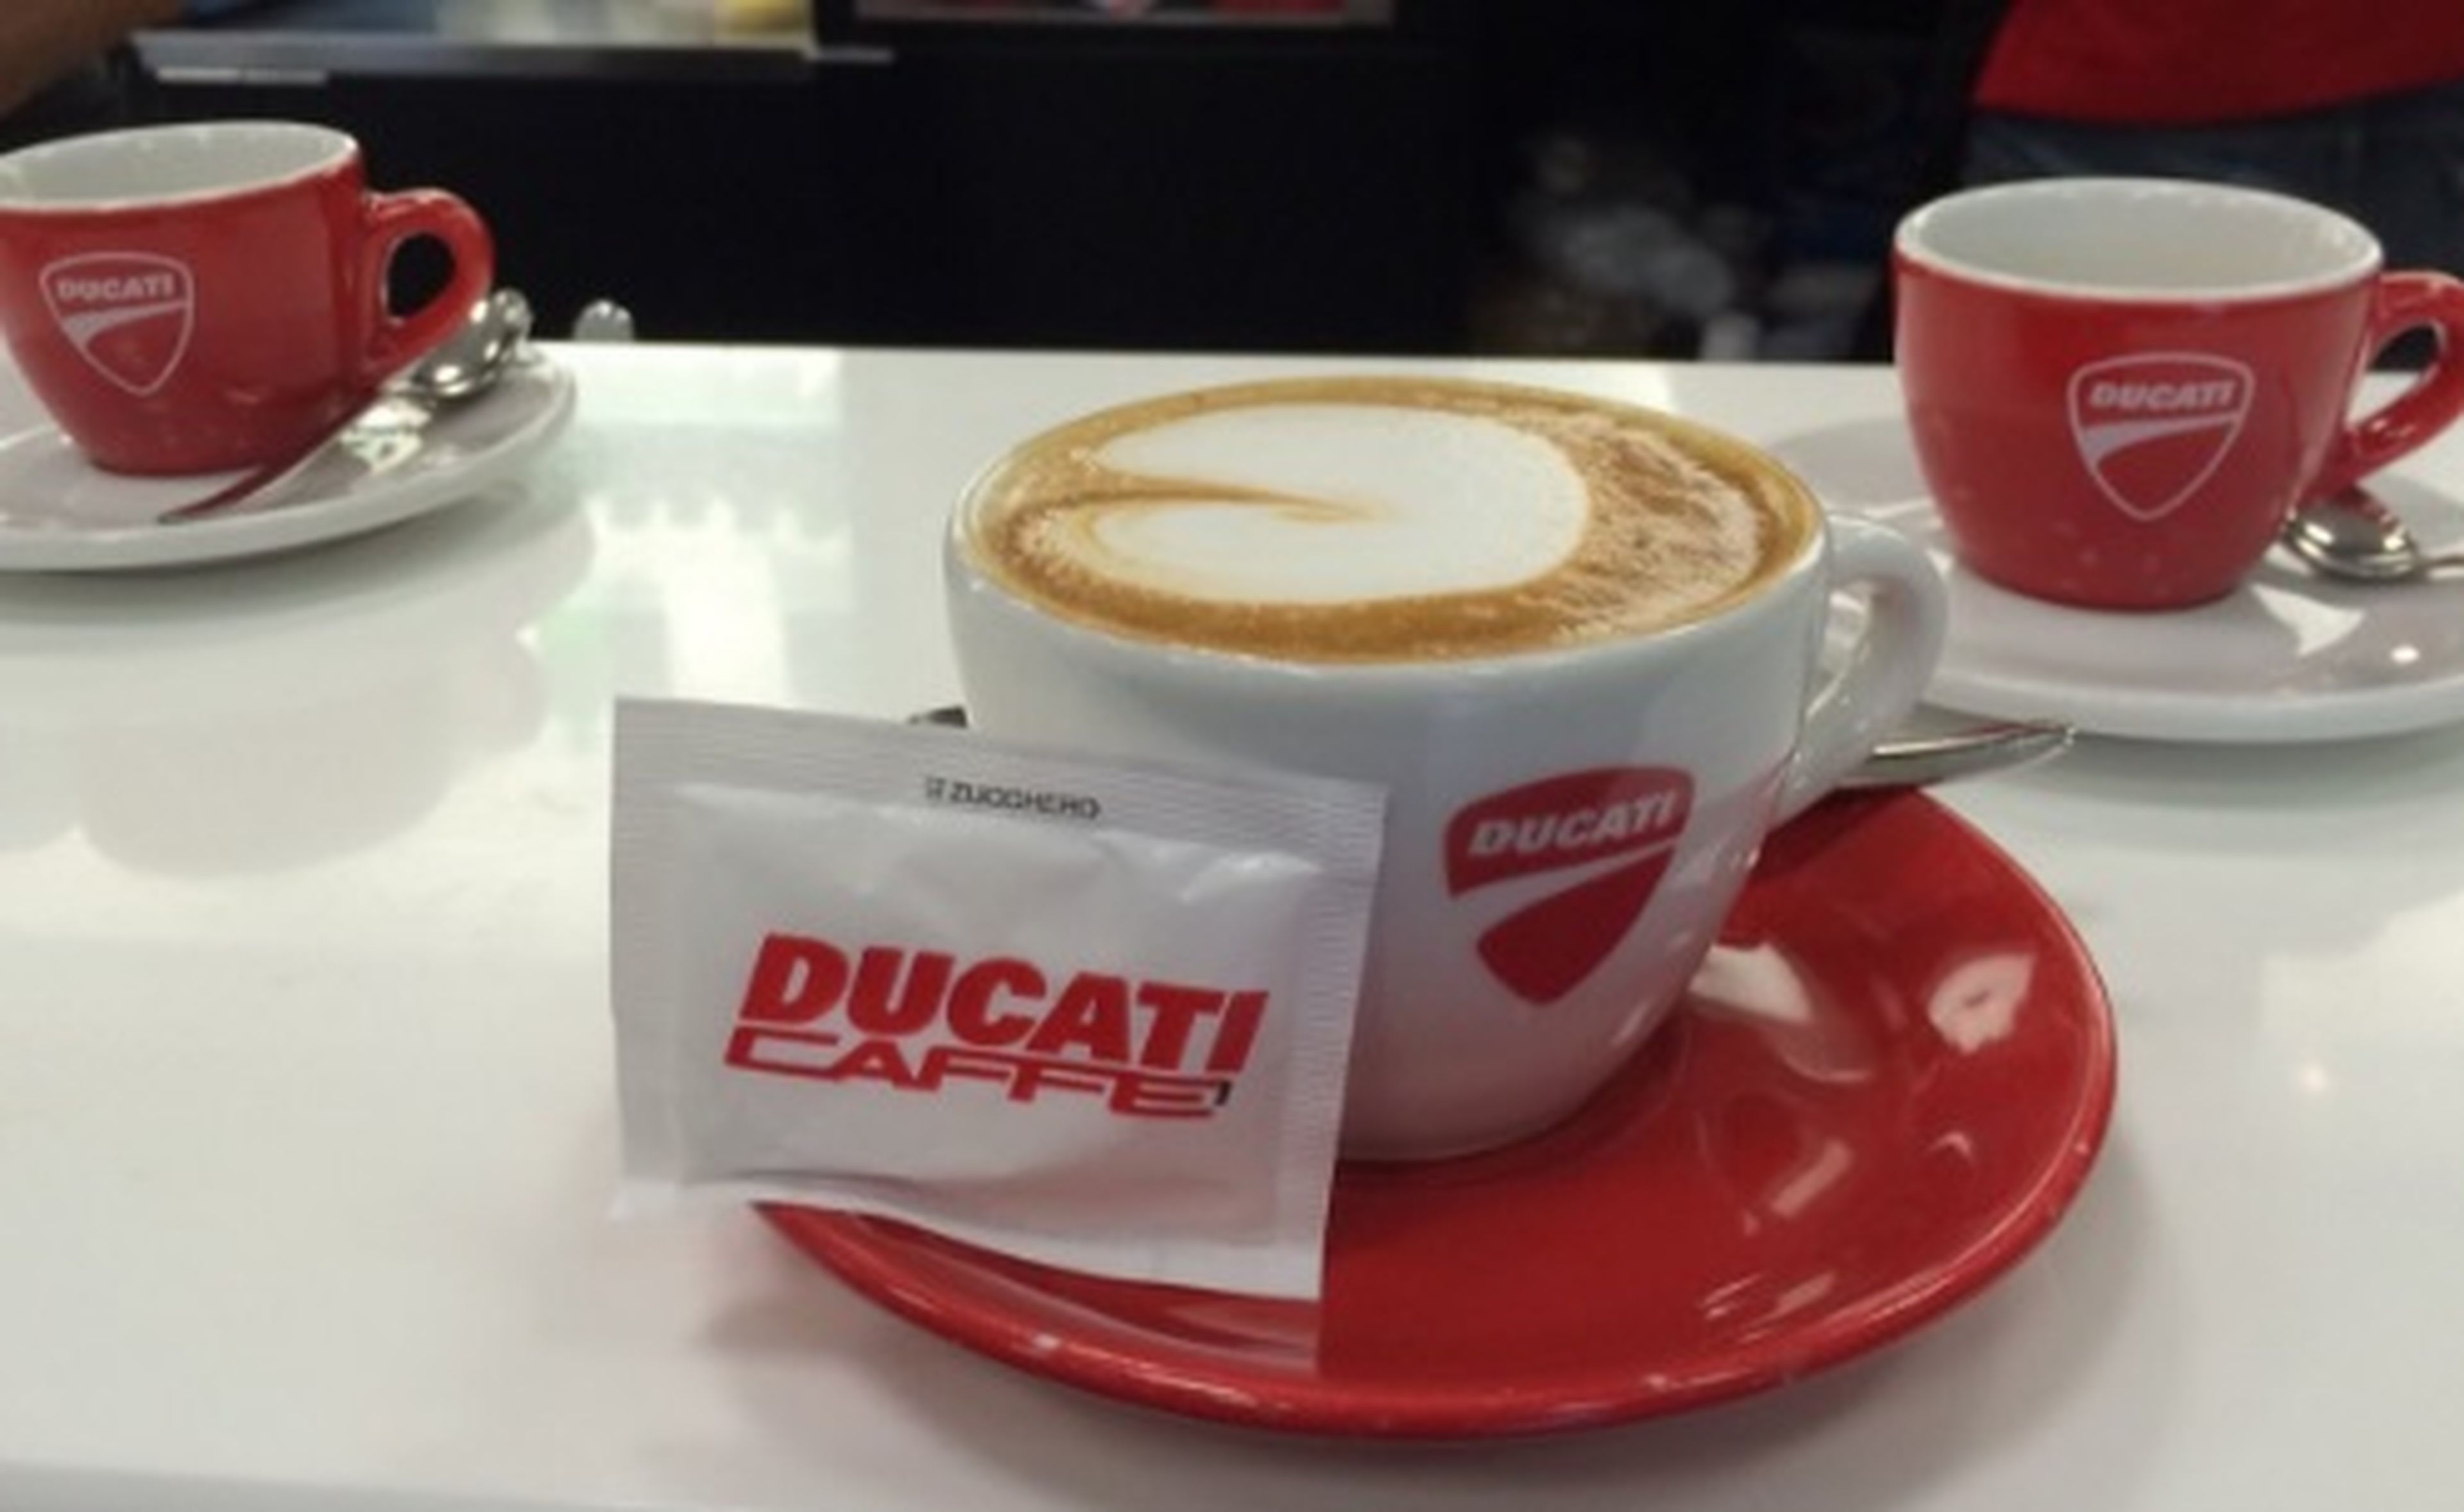 El primer café de Jorge Lorenzo en 2017...con Ducati